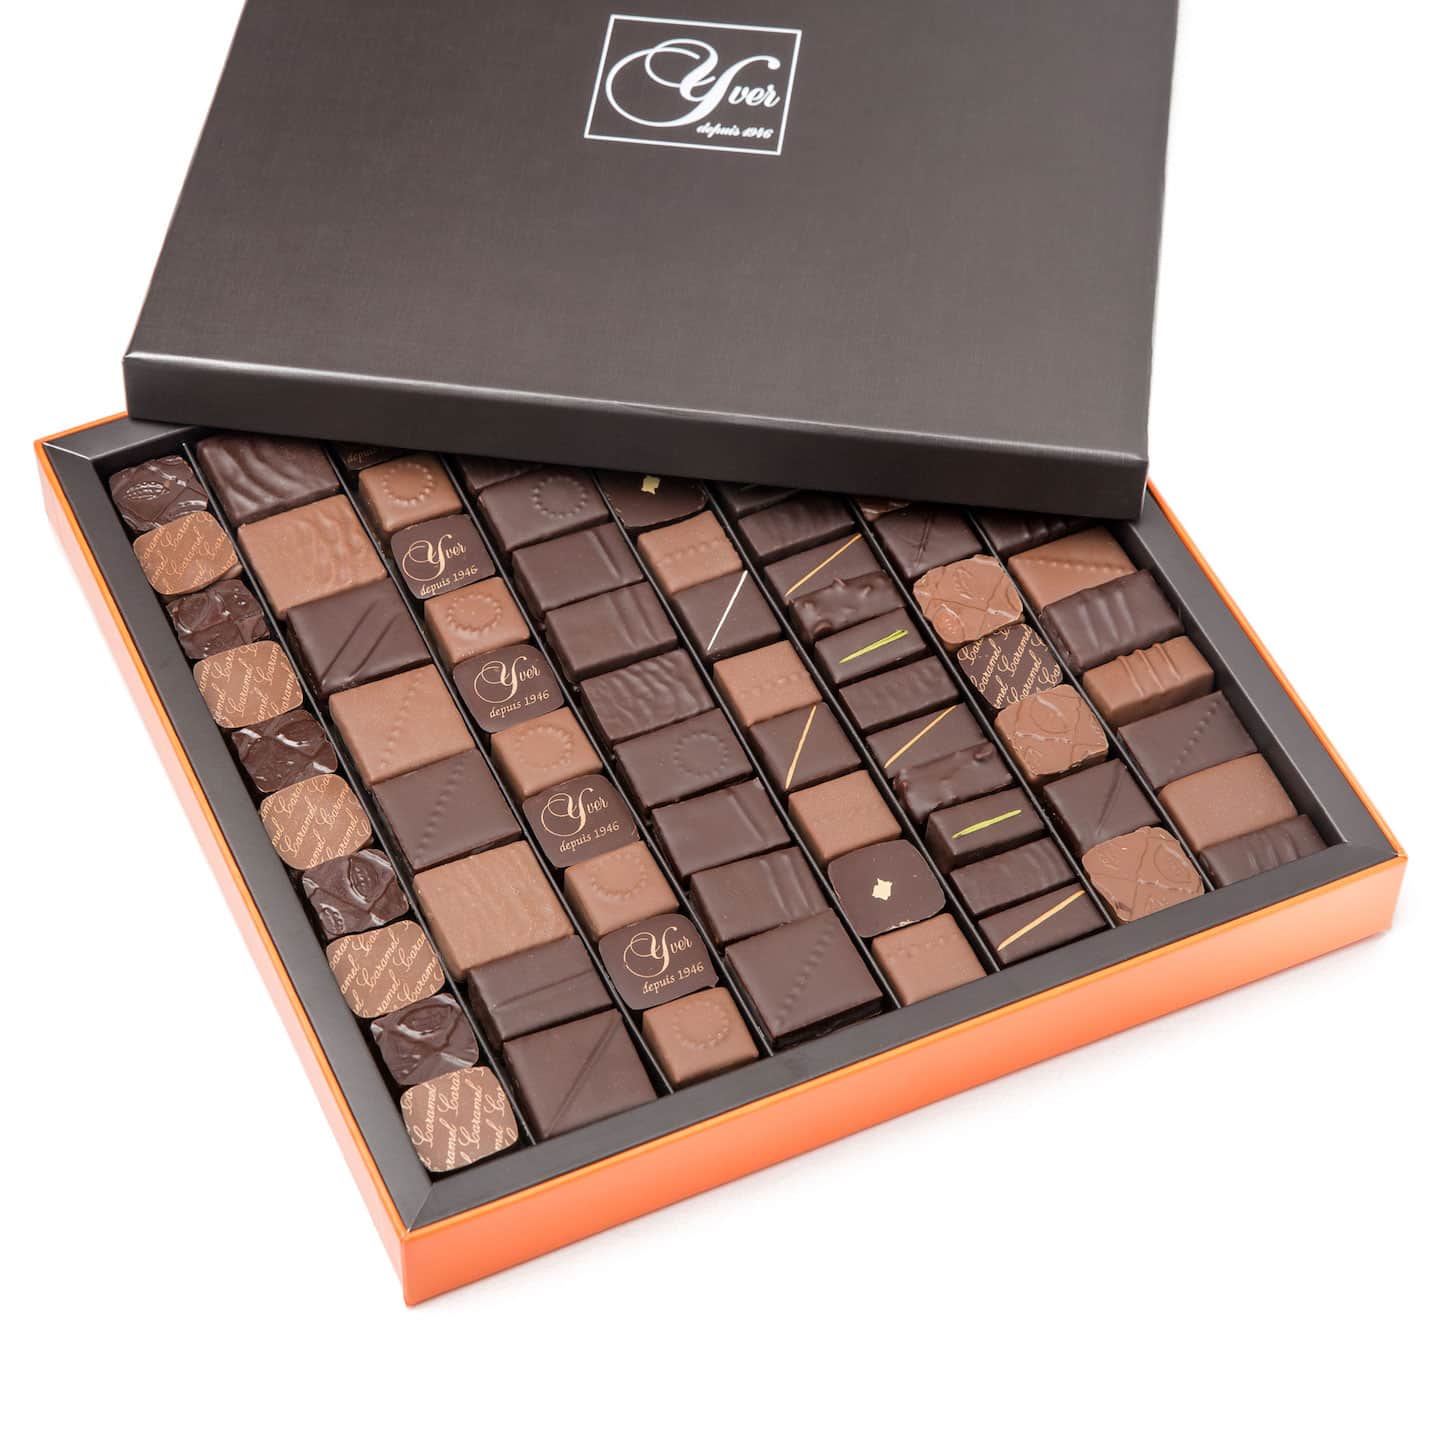 Assortiment chocolats Noir et Lait 710g - 106 pièces Prestige